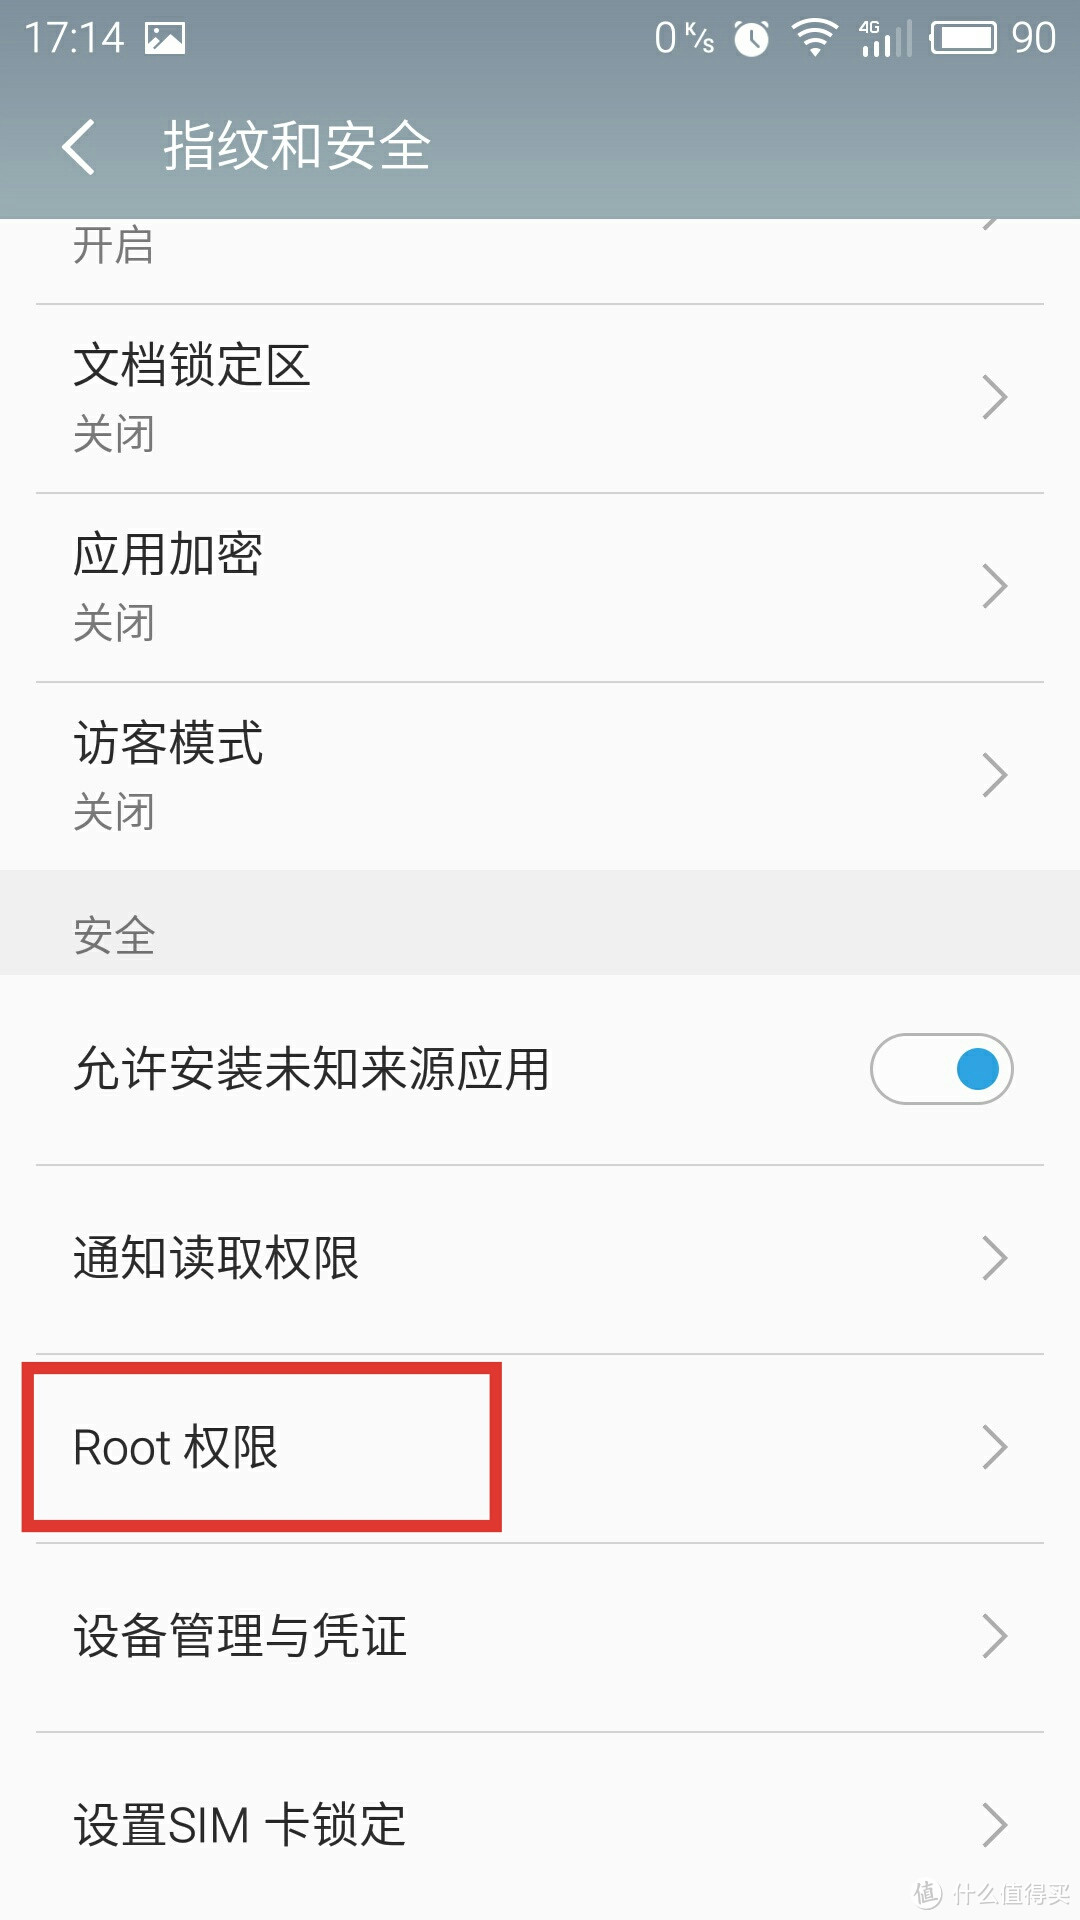 续航真本色,颜值是附加：MEIZU 魅族 魅蓝 note3 智能手机 使用体验(附带root教程)